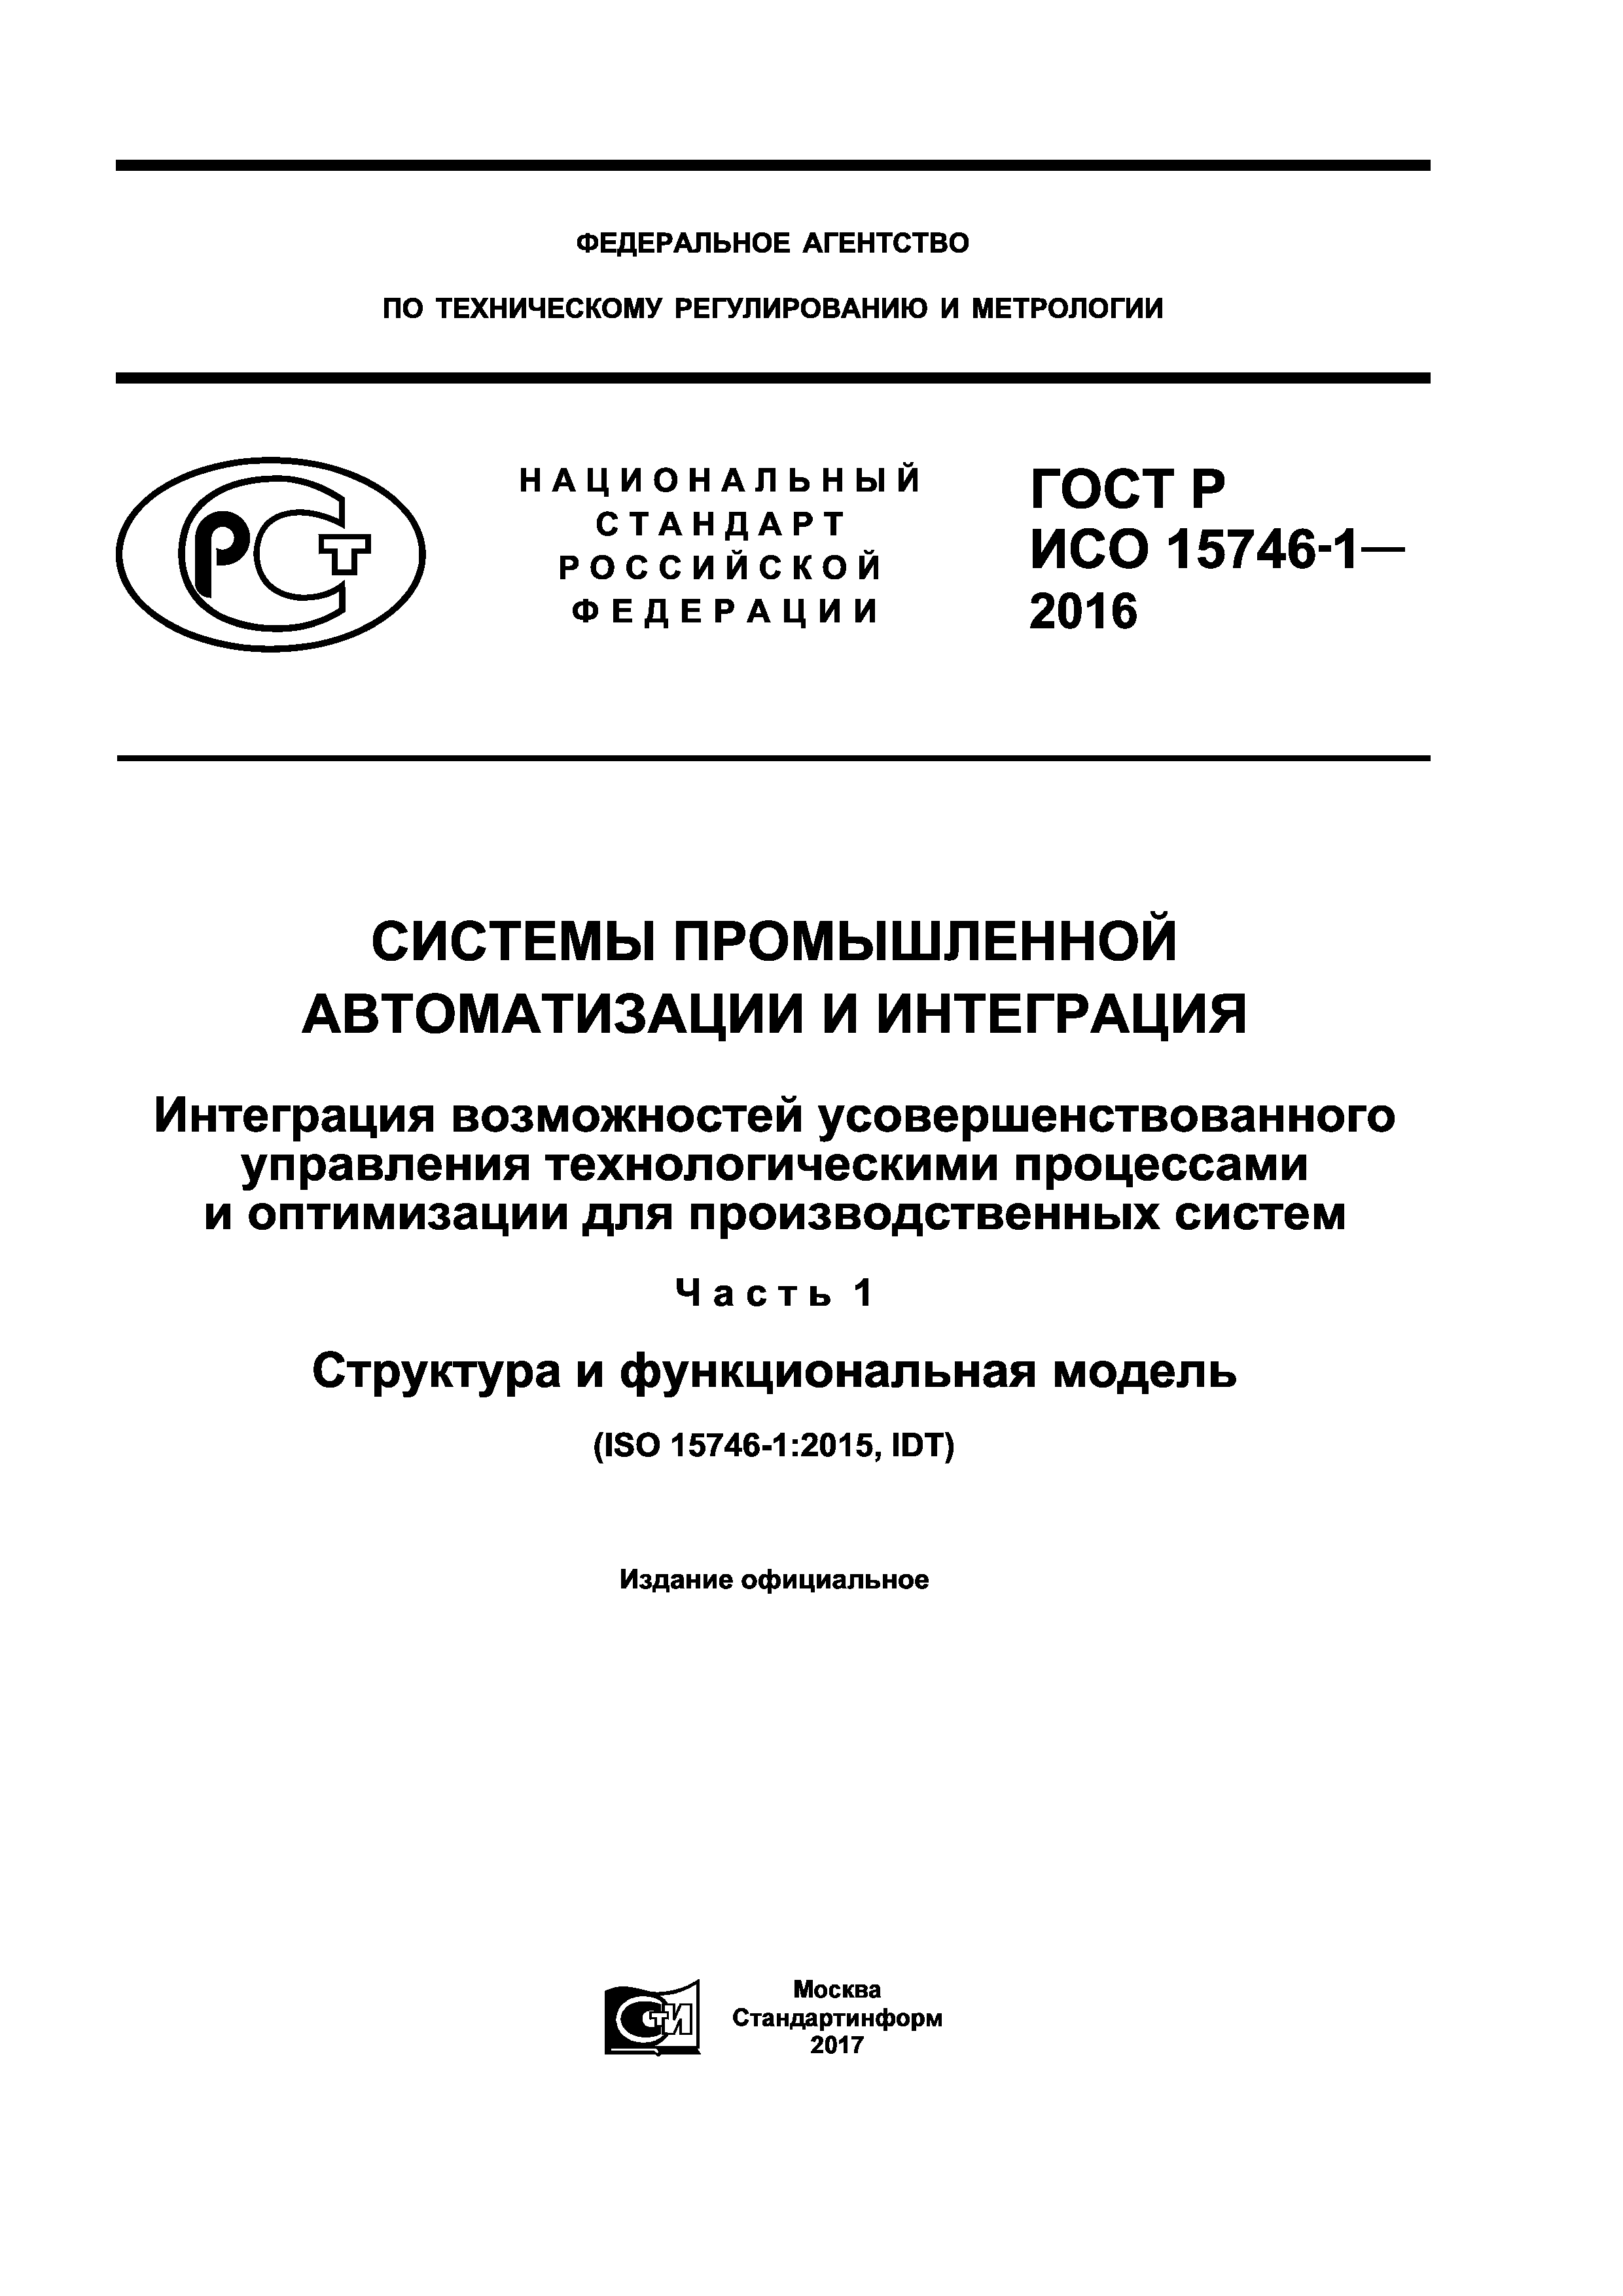 ГОСТ Р ИСО 15746-1-2016